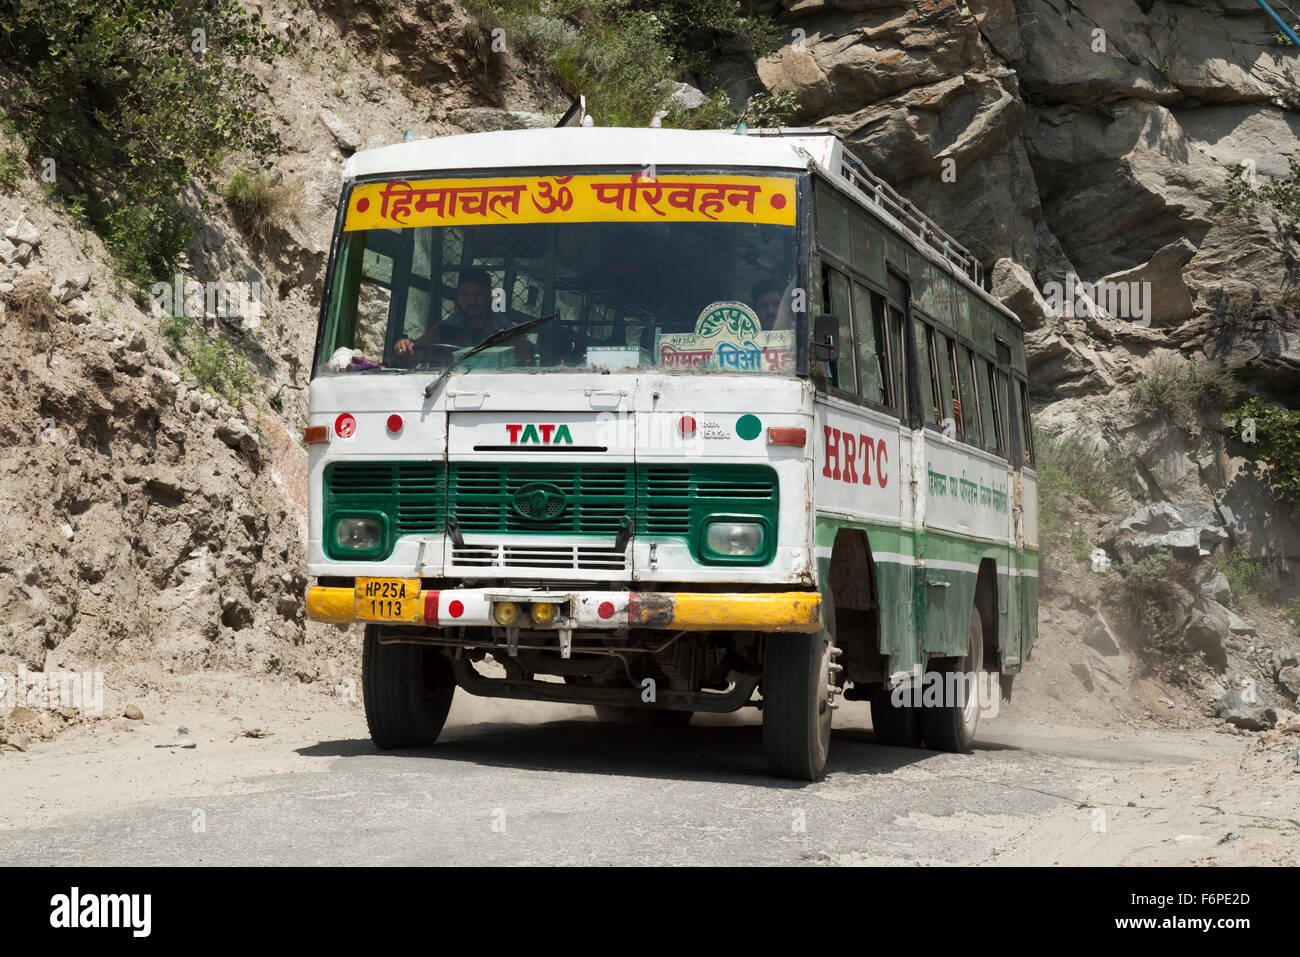 Himachal state transport corporation négocie bus col de montagne de l'himalaya dangereux Banque D'Images